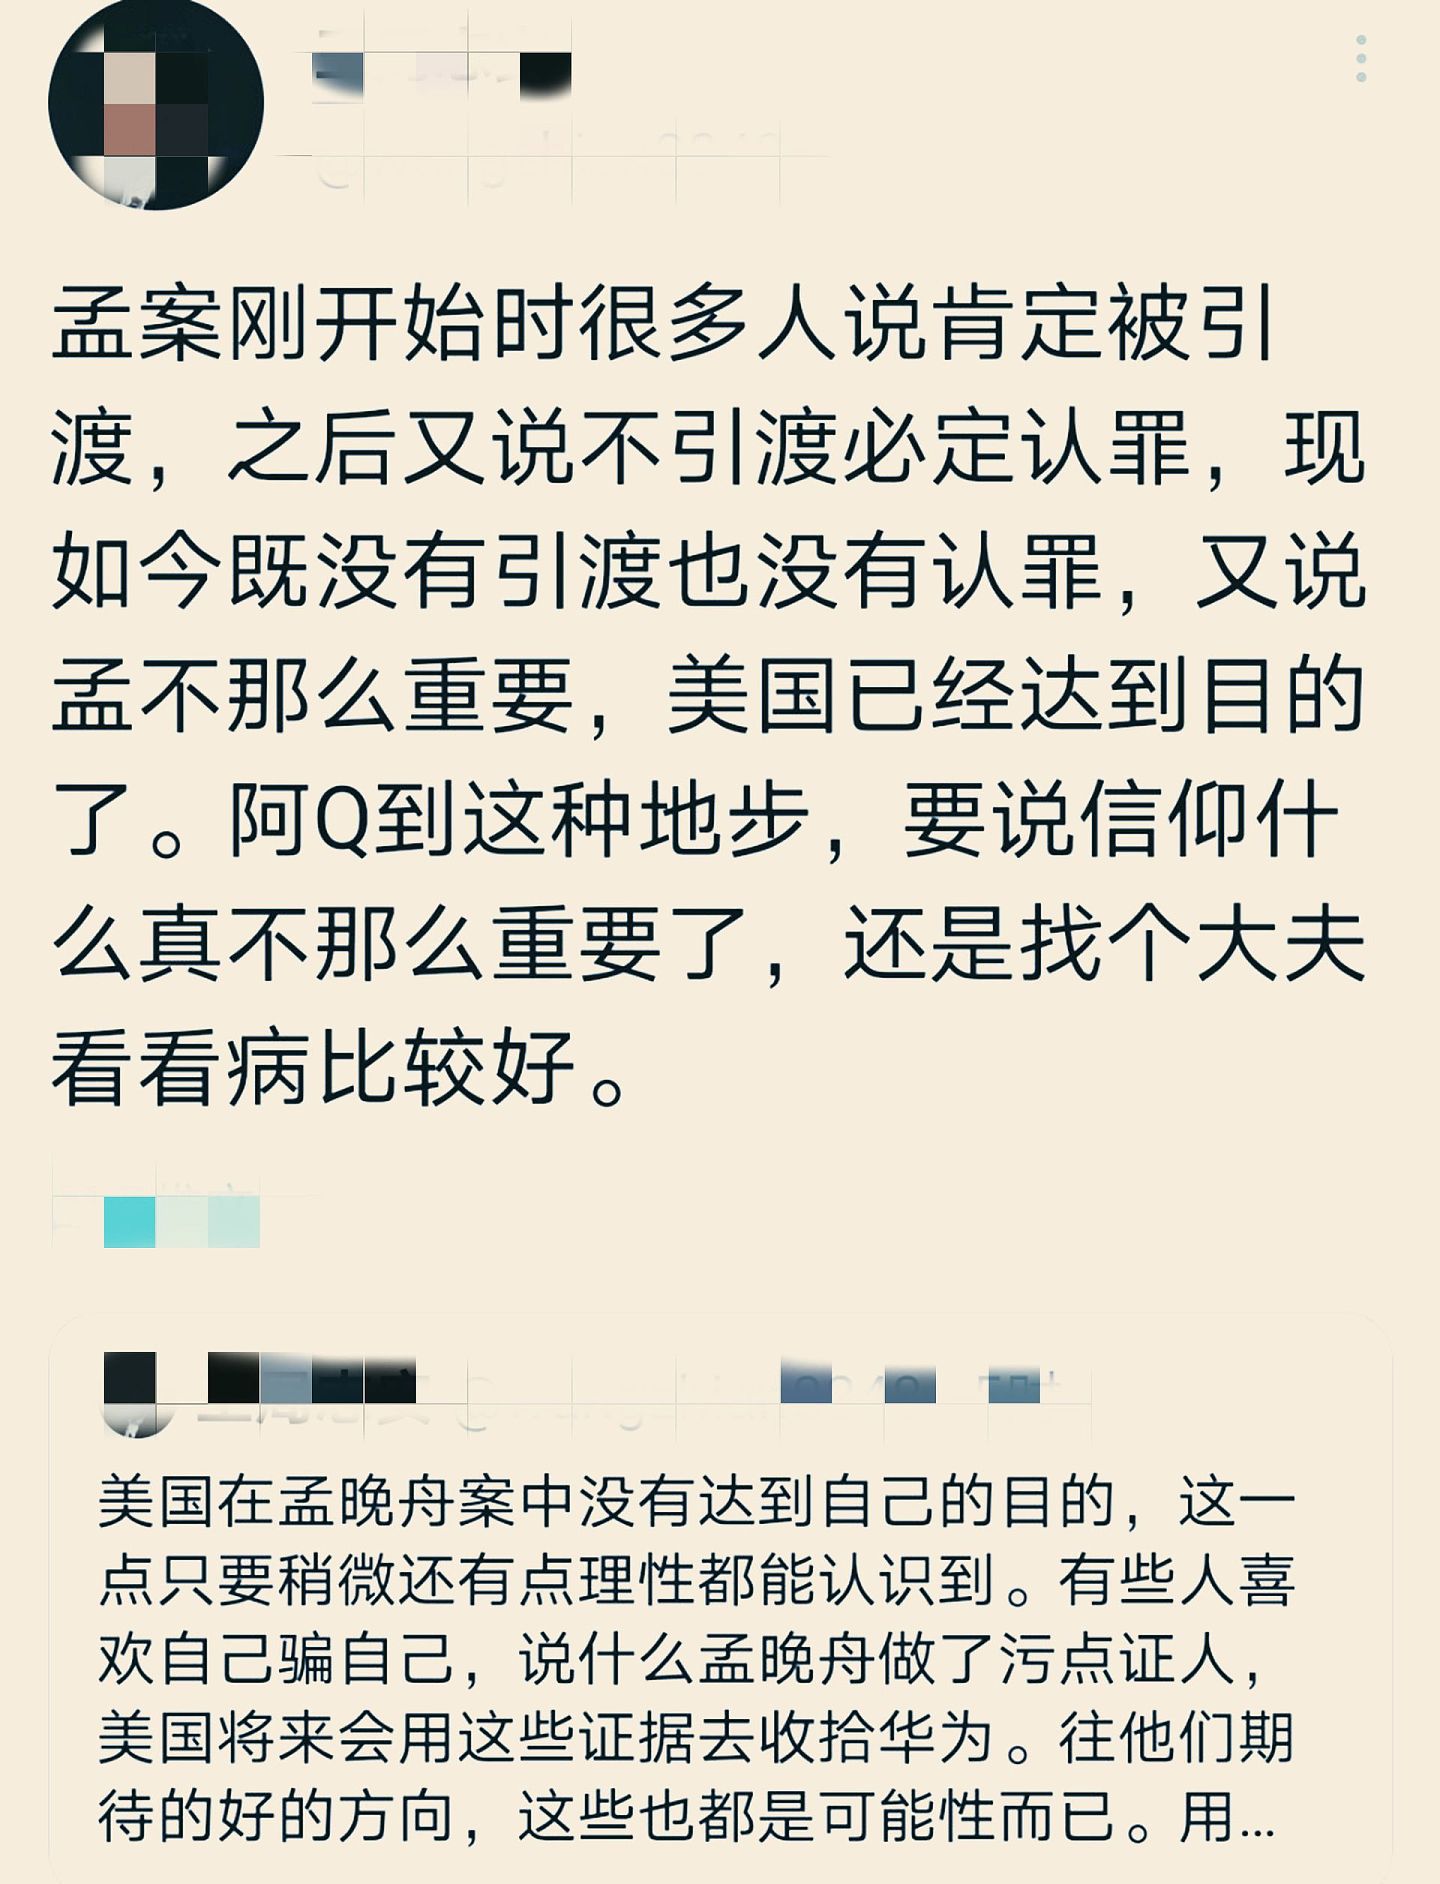 孟晚舟返回中国，引各方关注。图中旅日的中国央视前记者对孟晚舟返回中国一事发表的评论。（微博@2049年的世界）